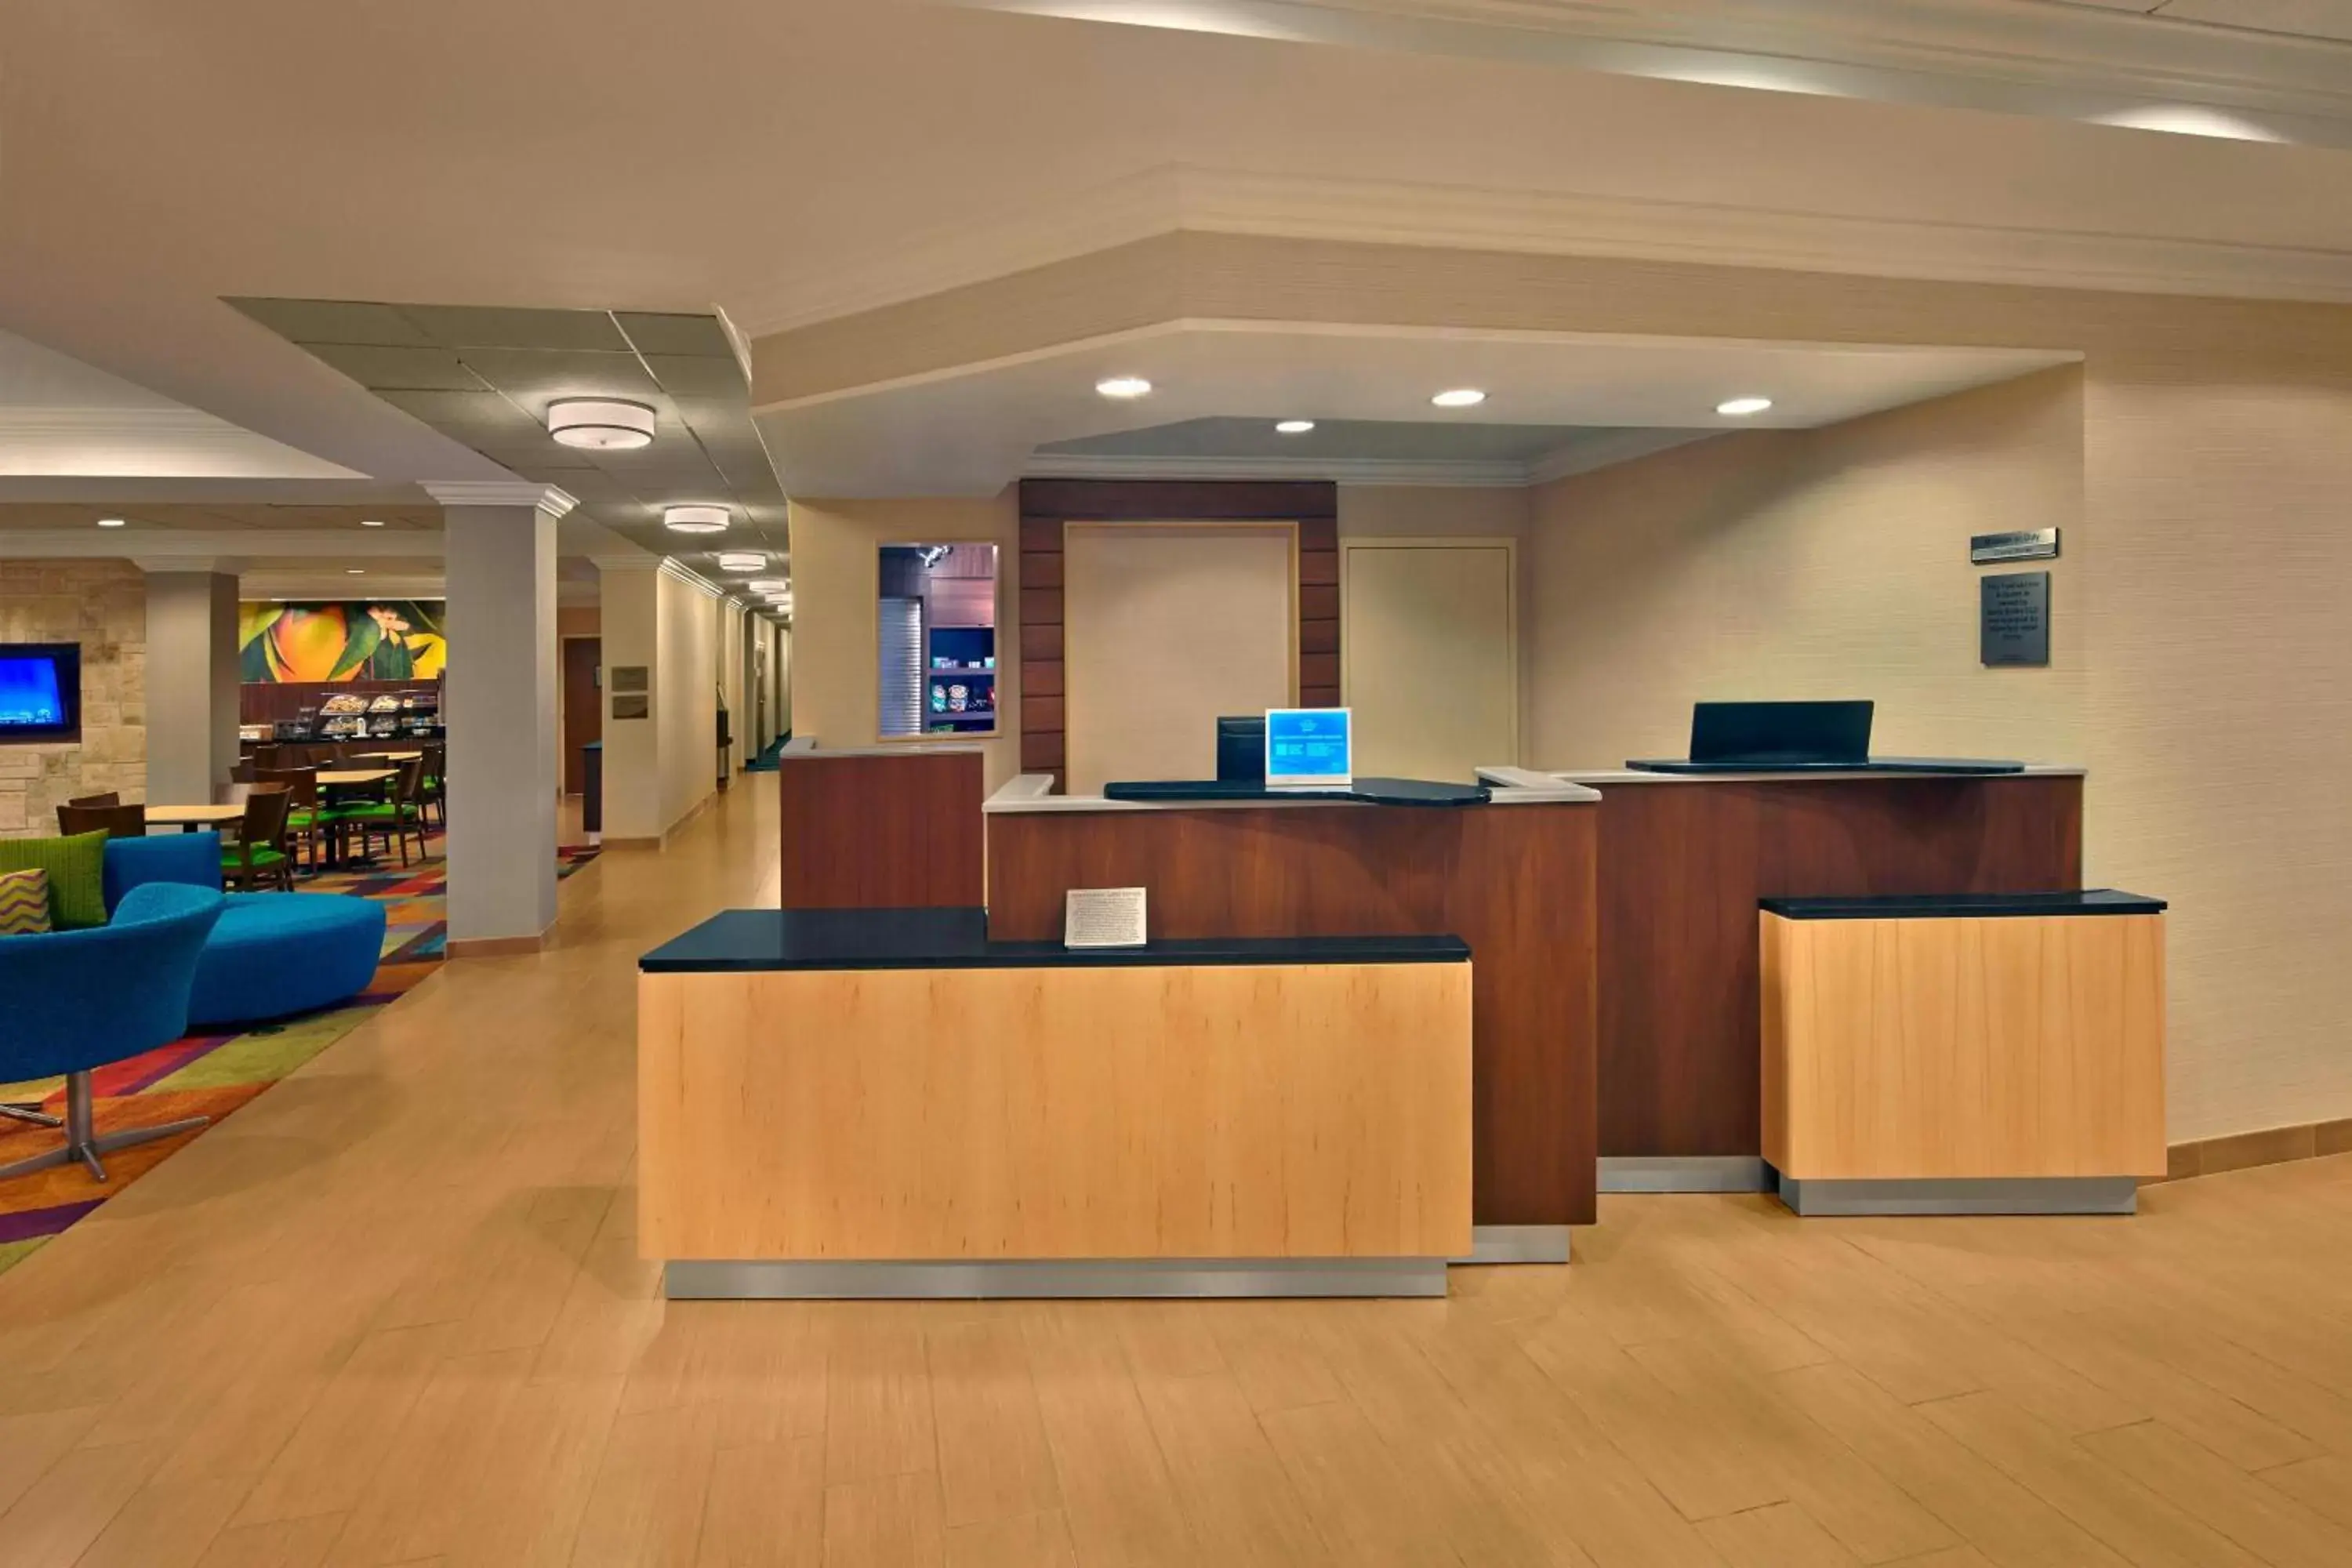 Lobby or reception, Lobby/Reception in Fairfield Inn & Suites Boca Raton